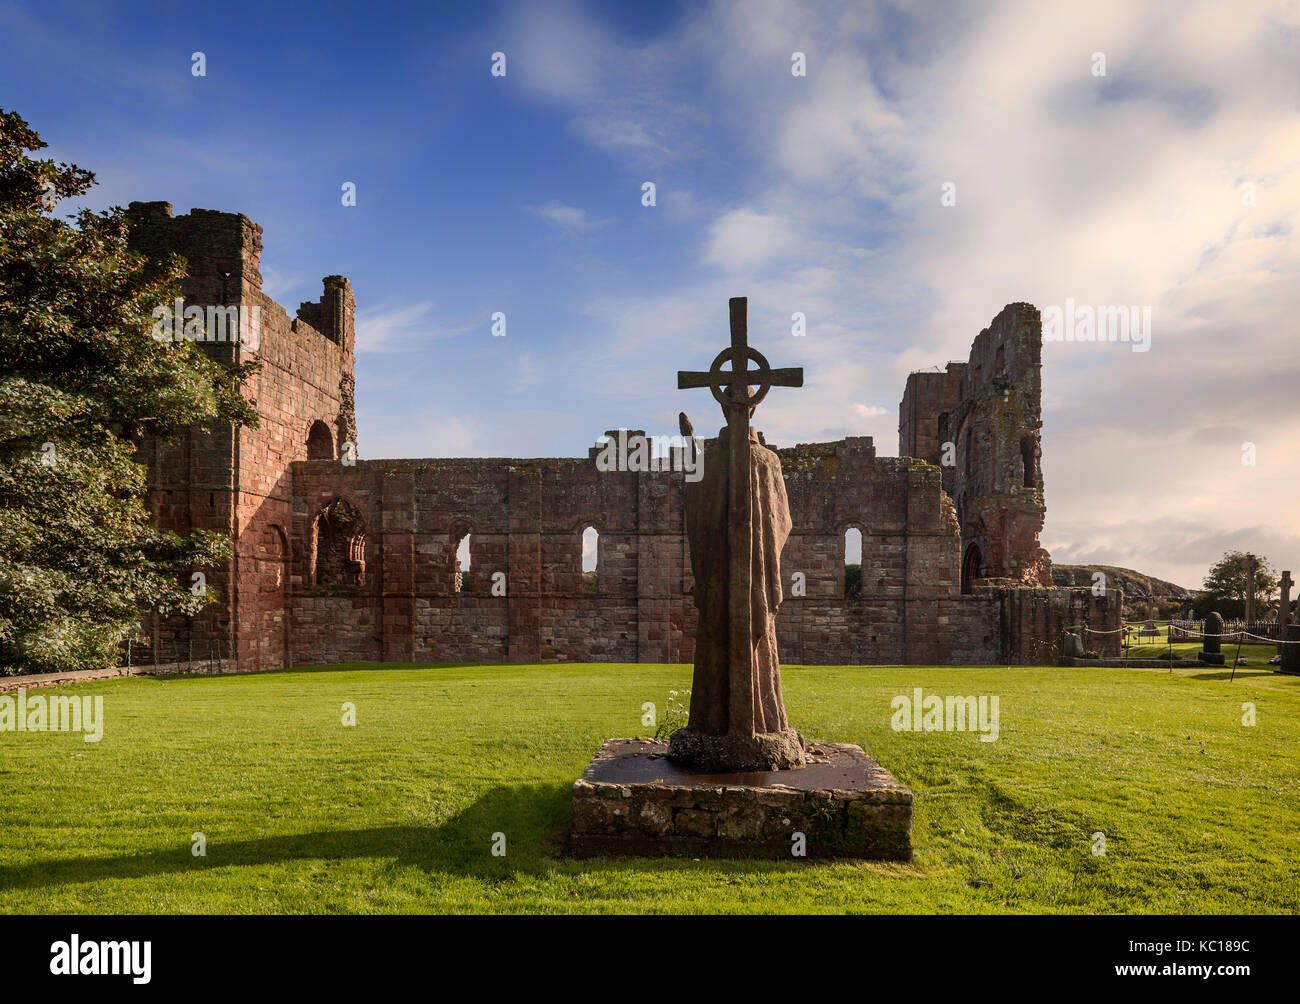 La estatua de St Cuthbert junto a las ruinas de la iglesia, construida alrededor de 1150, en el lugar donde su cuerpo fue enterrado. isla sagrada, Northumberland, Inglaterra Foto de stock